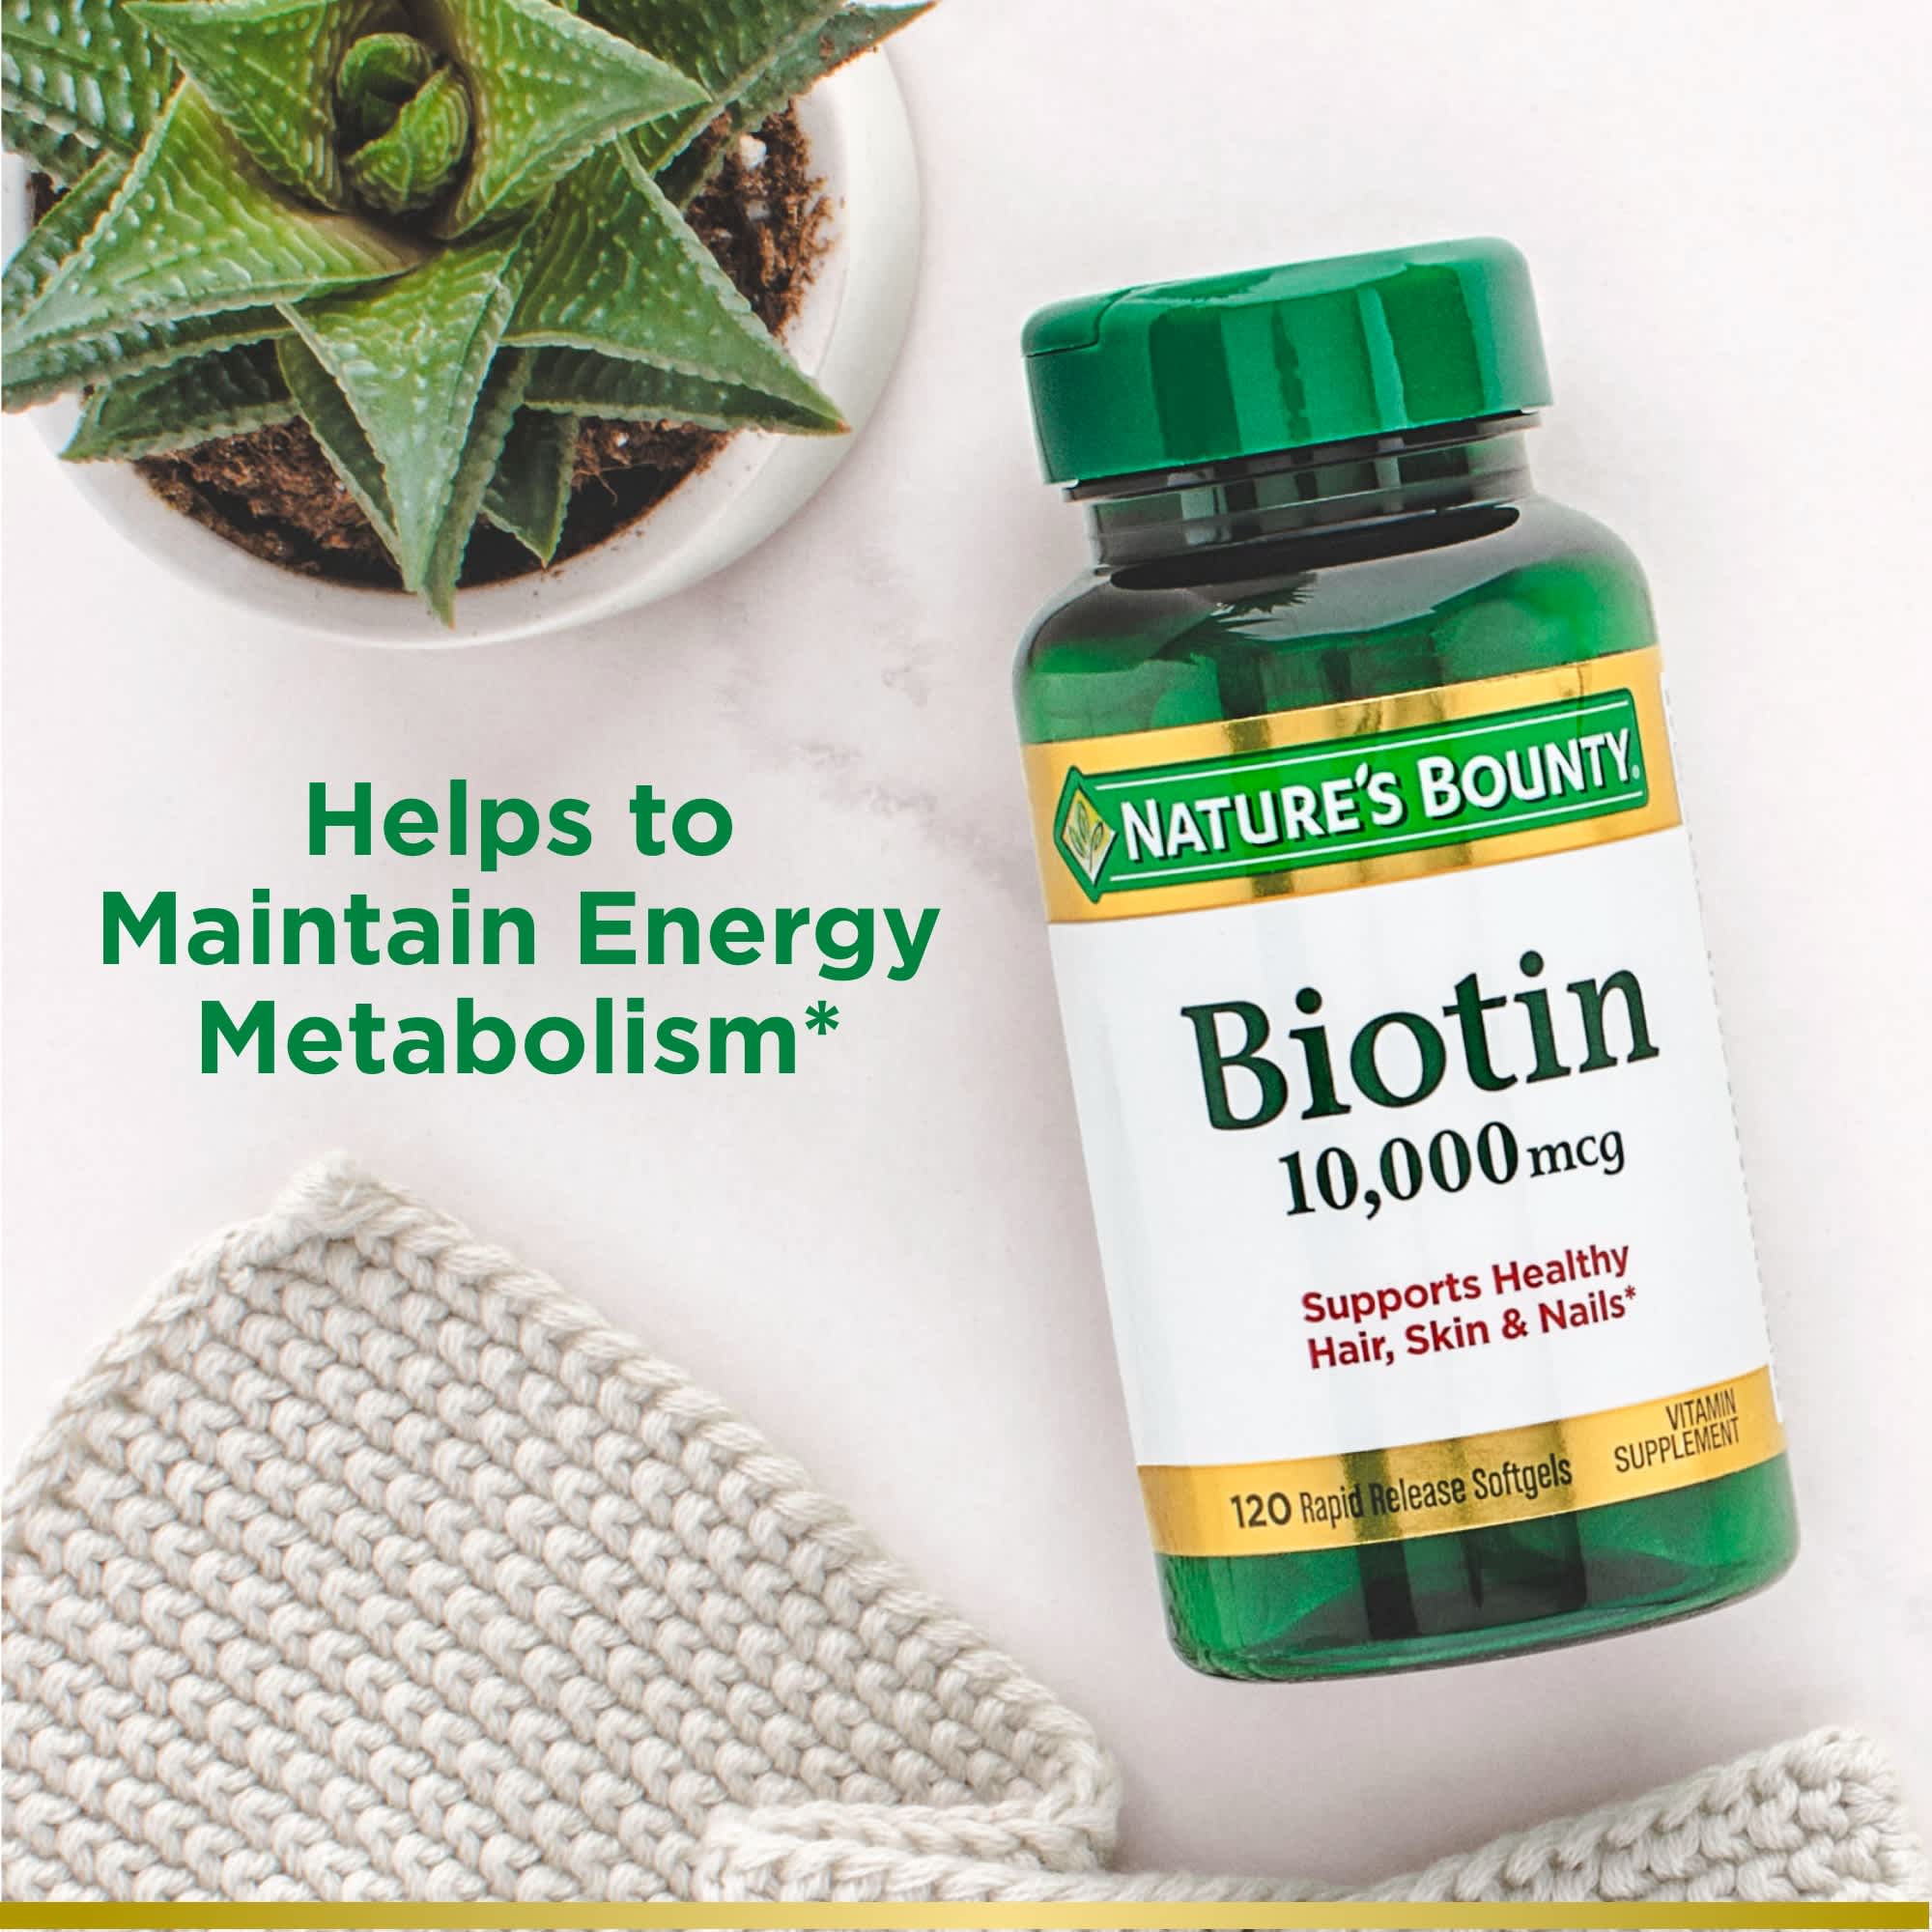 Nature’s Bounty Biotin Supplement, 10000mcg, 120 Rapid Release Softgels - image 5 of 8